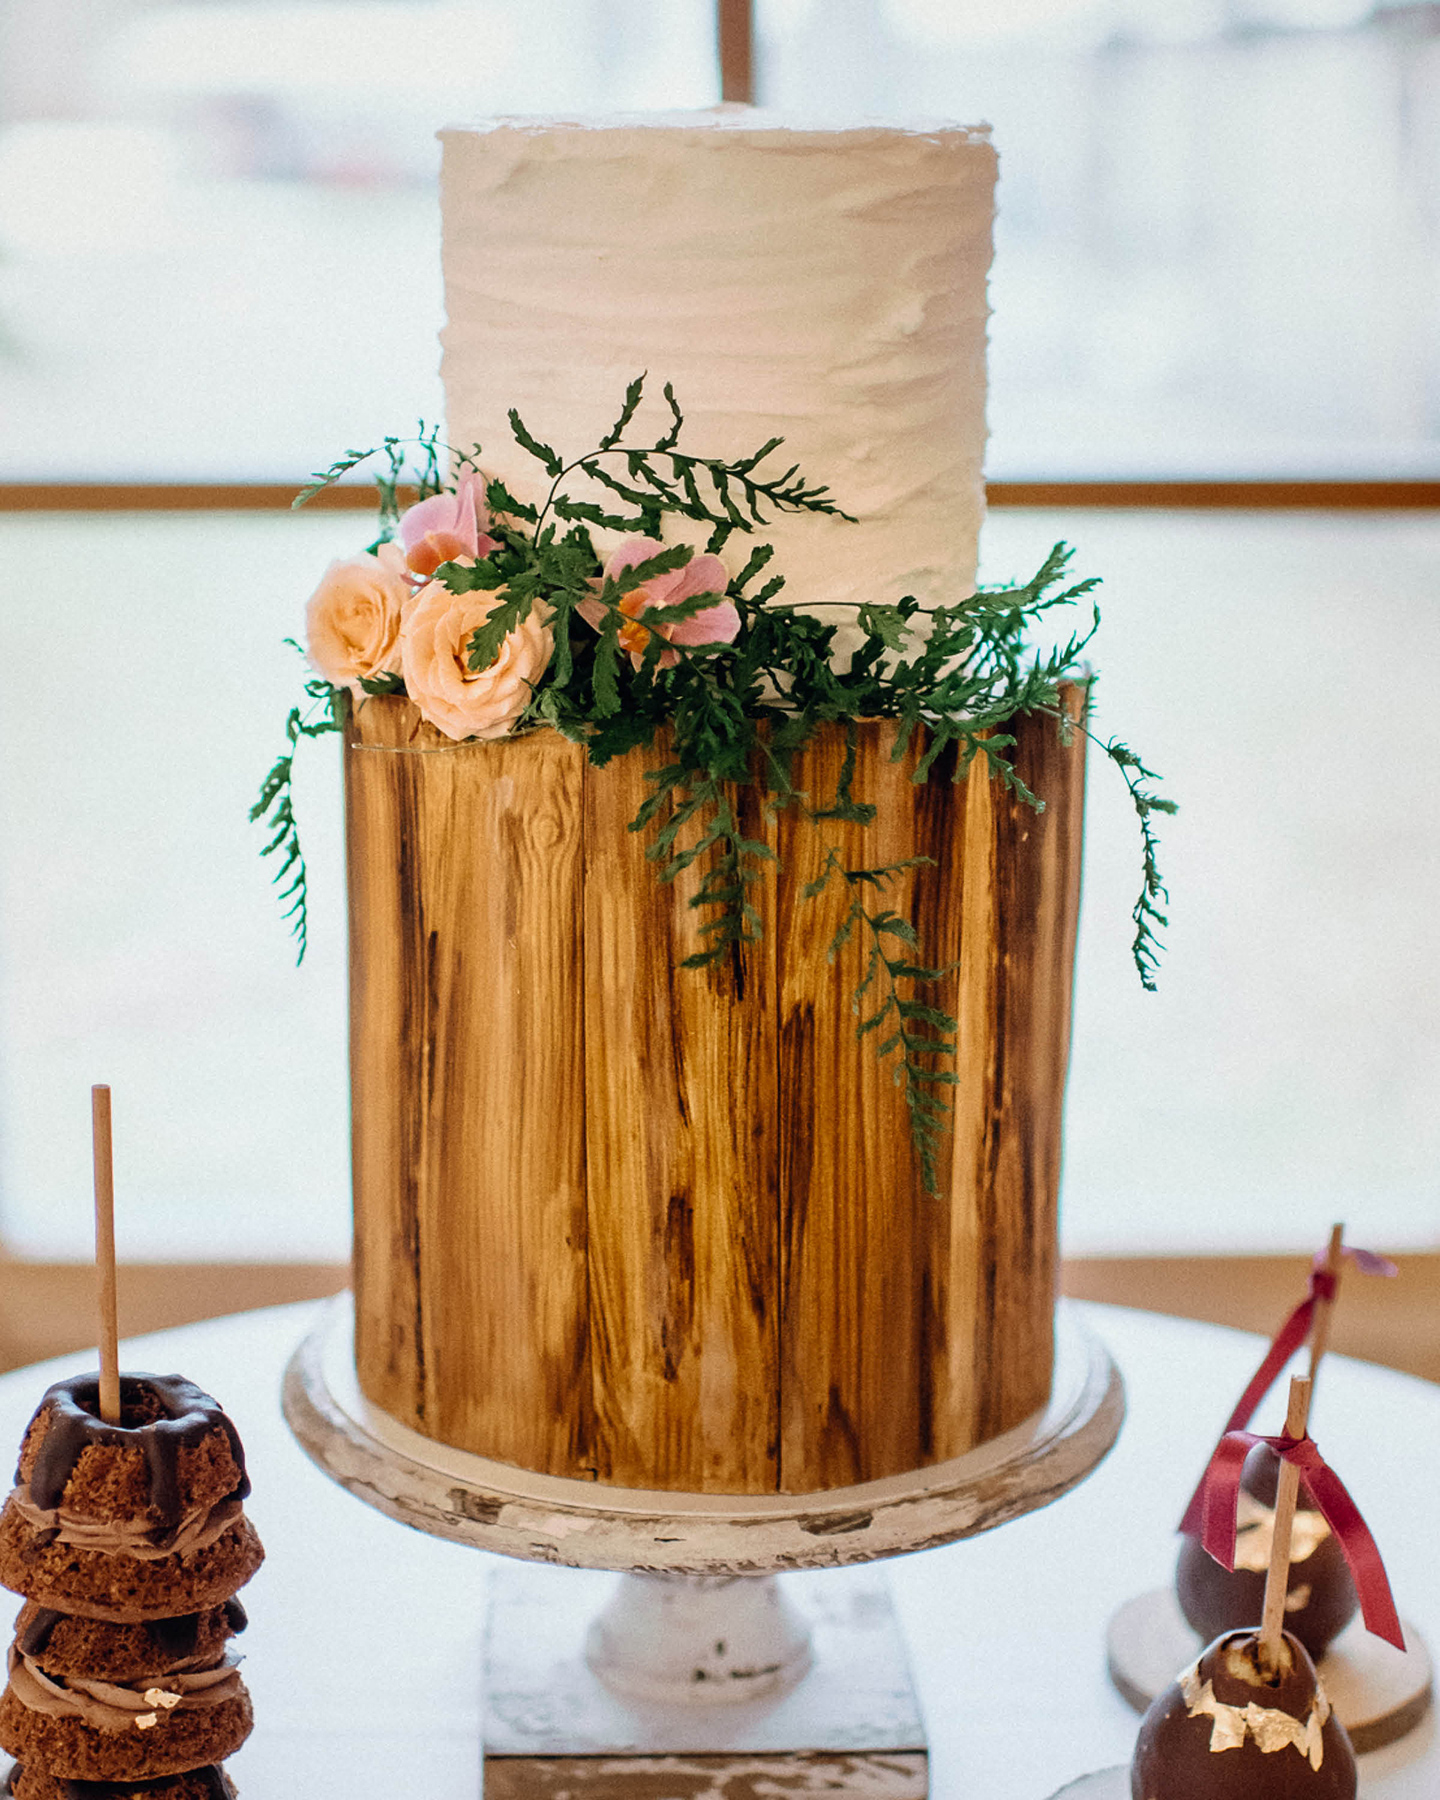 Hochzeitstorte mit Fondant im rustikalen Holz-Optik Stil. Verziert mit wilden Blumen und Pflanzen